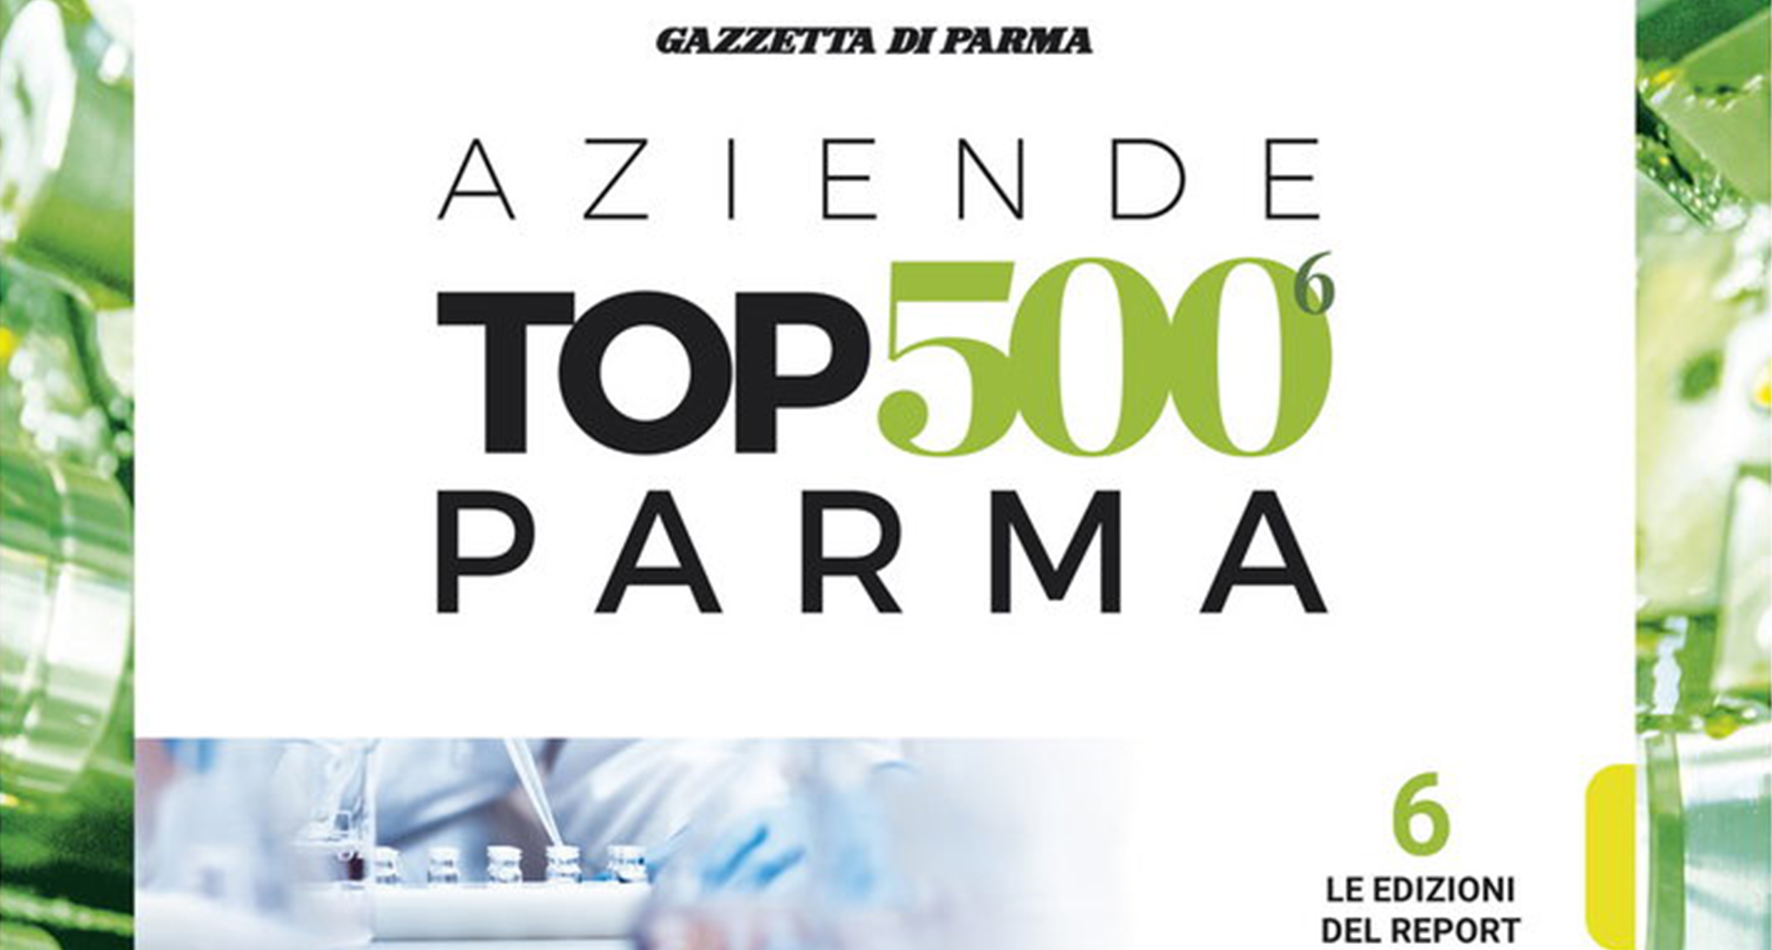 Top 500 - le aziende di Parma. Anche quest'anno Mag Data è protagonista.